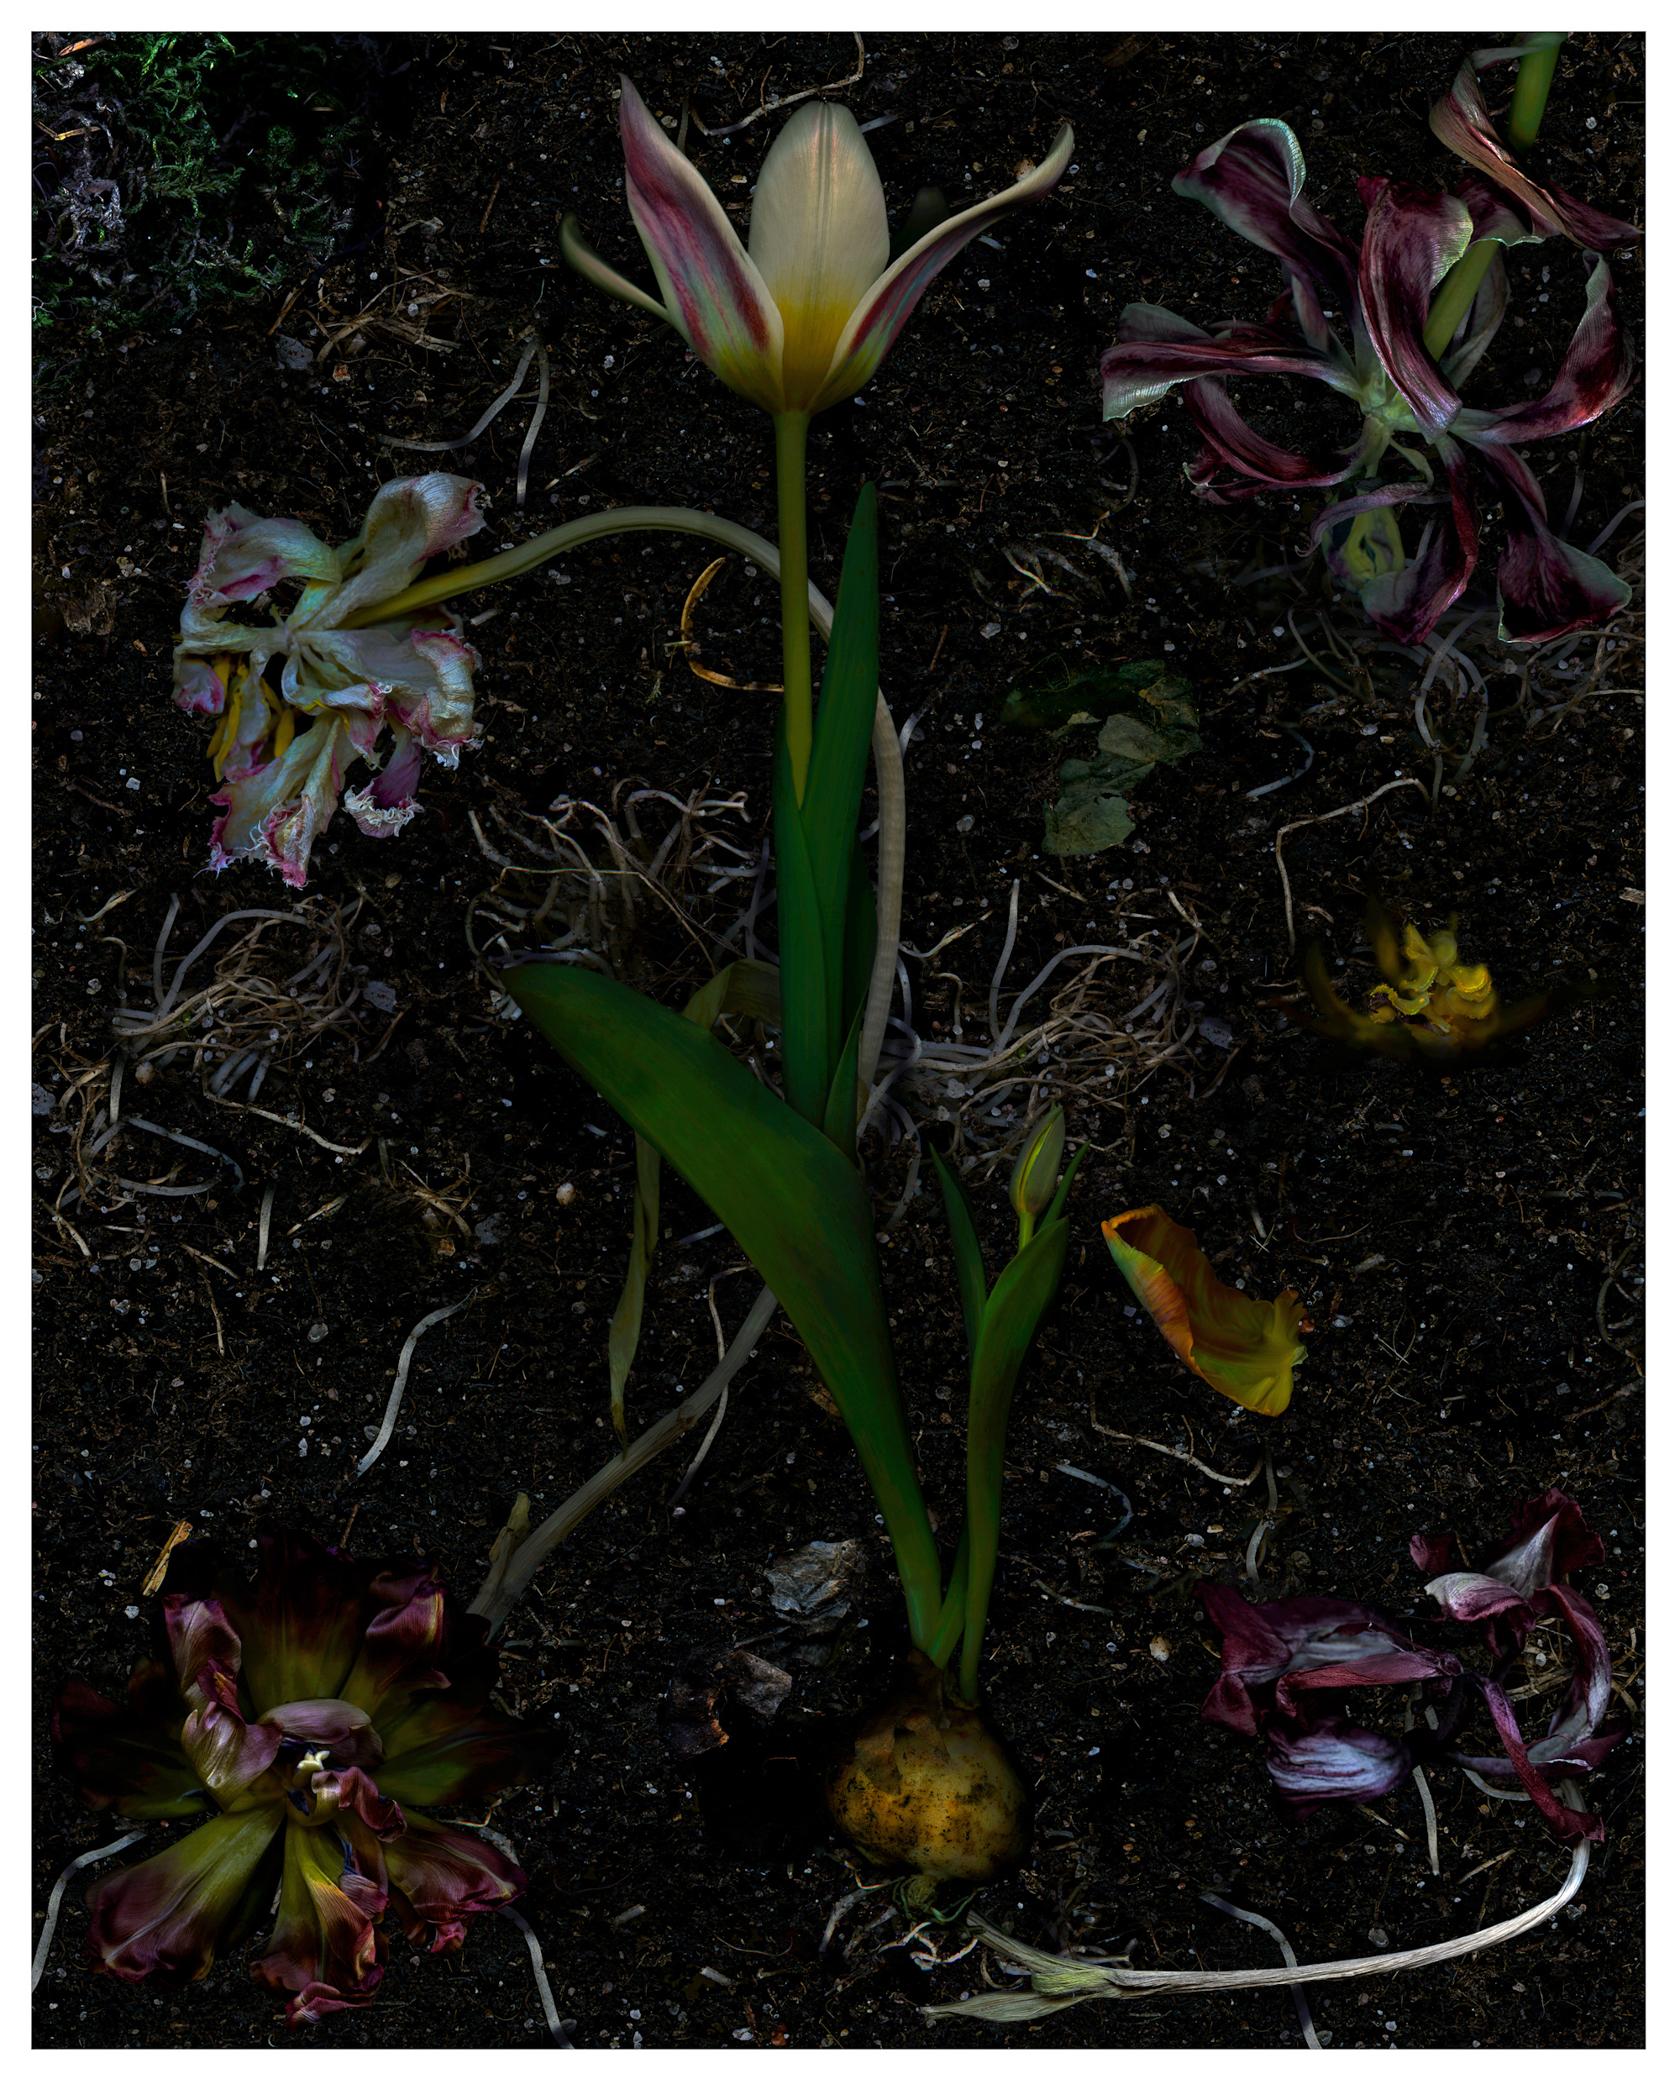 Color Photograph Zoltan Gerliczki - Régénérations de tulipes. Photographie numérique à collage de couleur